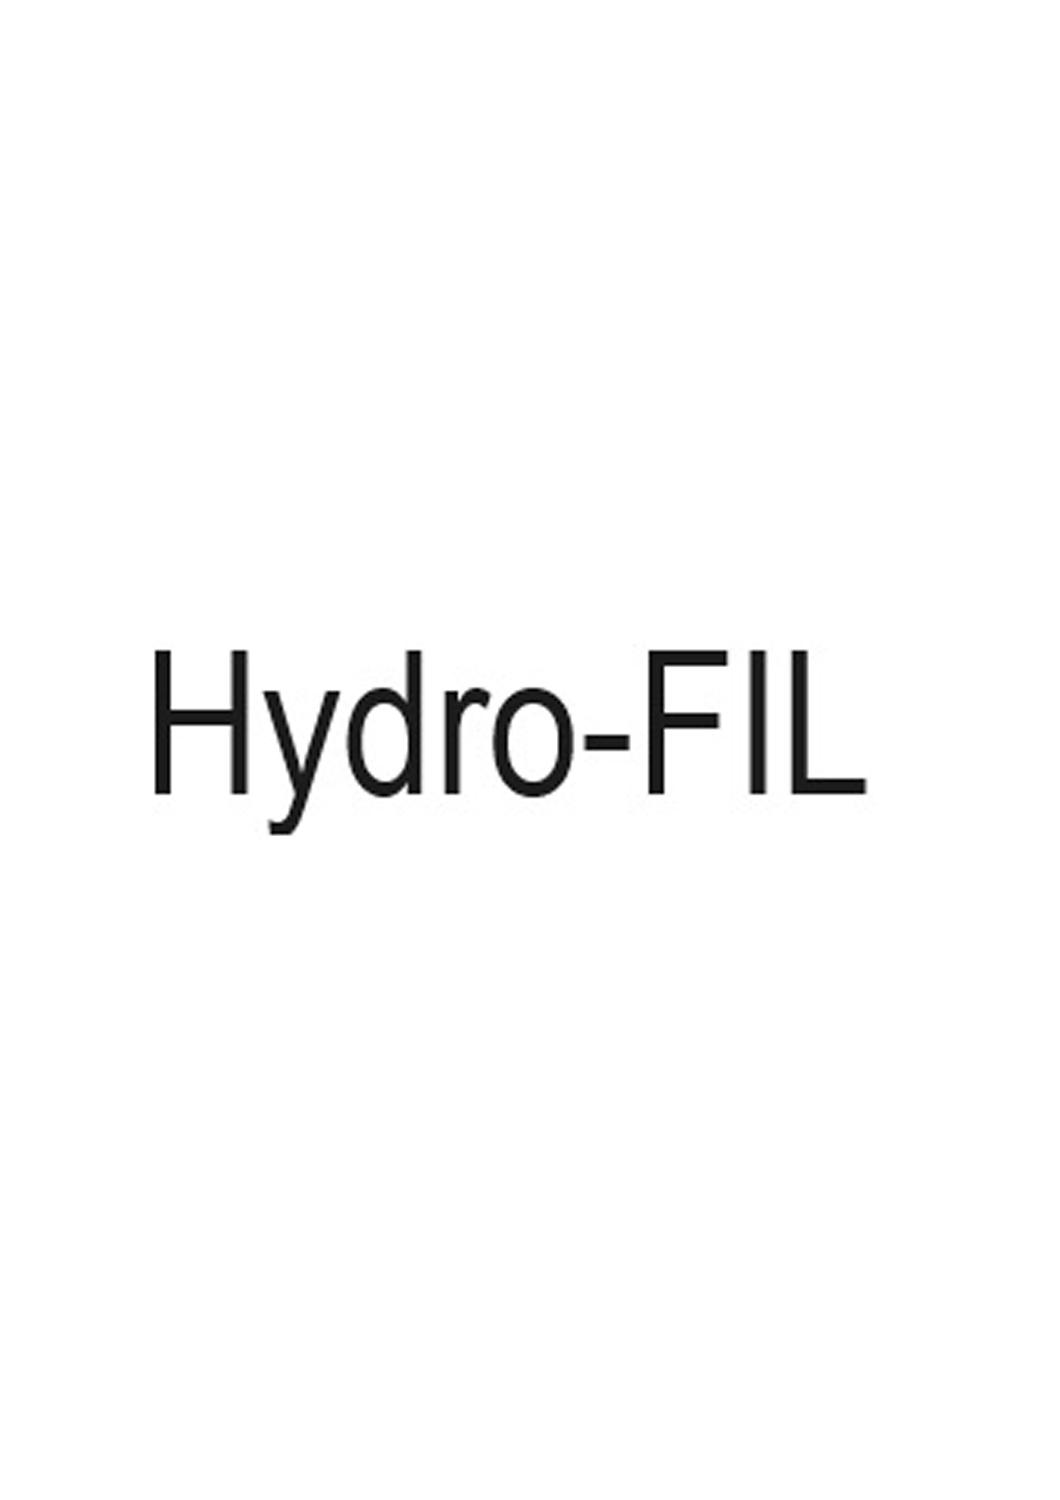 HYDRO-FILlogo